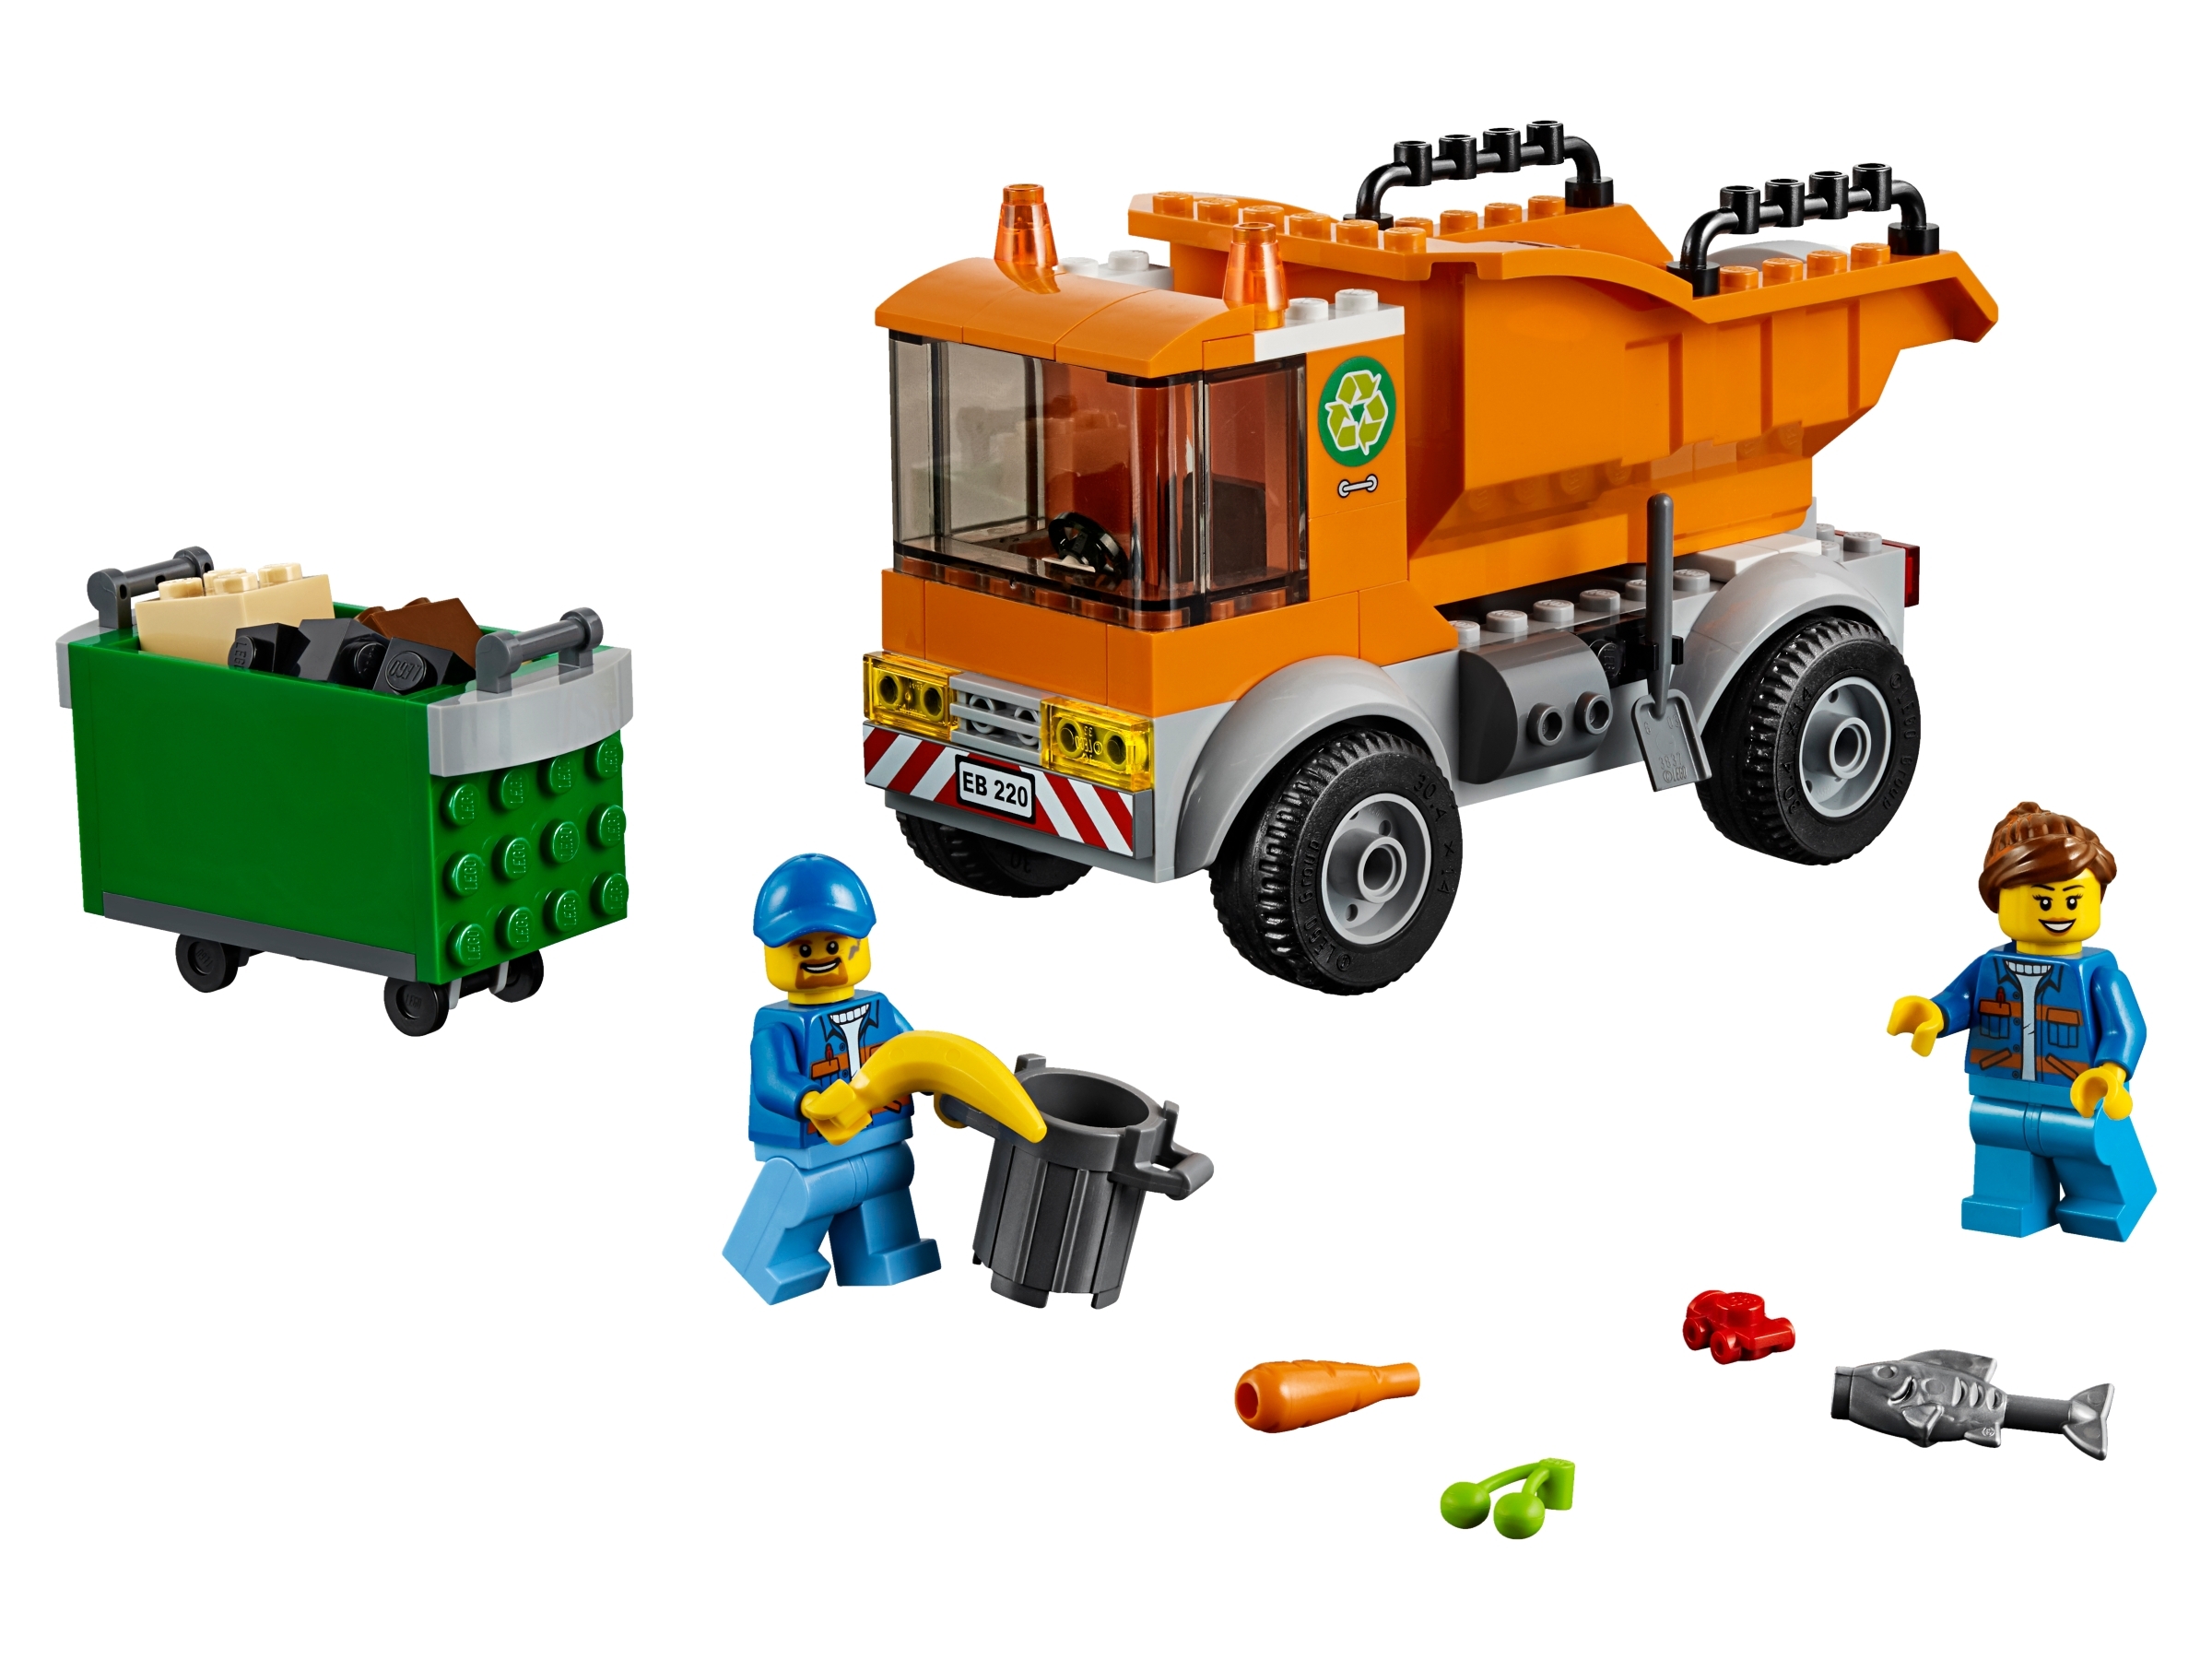 Klocki Lego City 60220 Śmieciarka